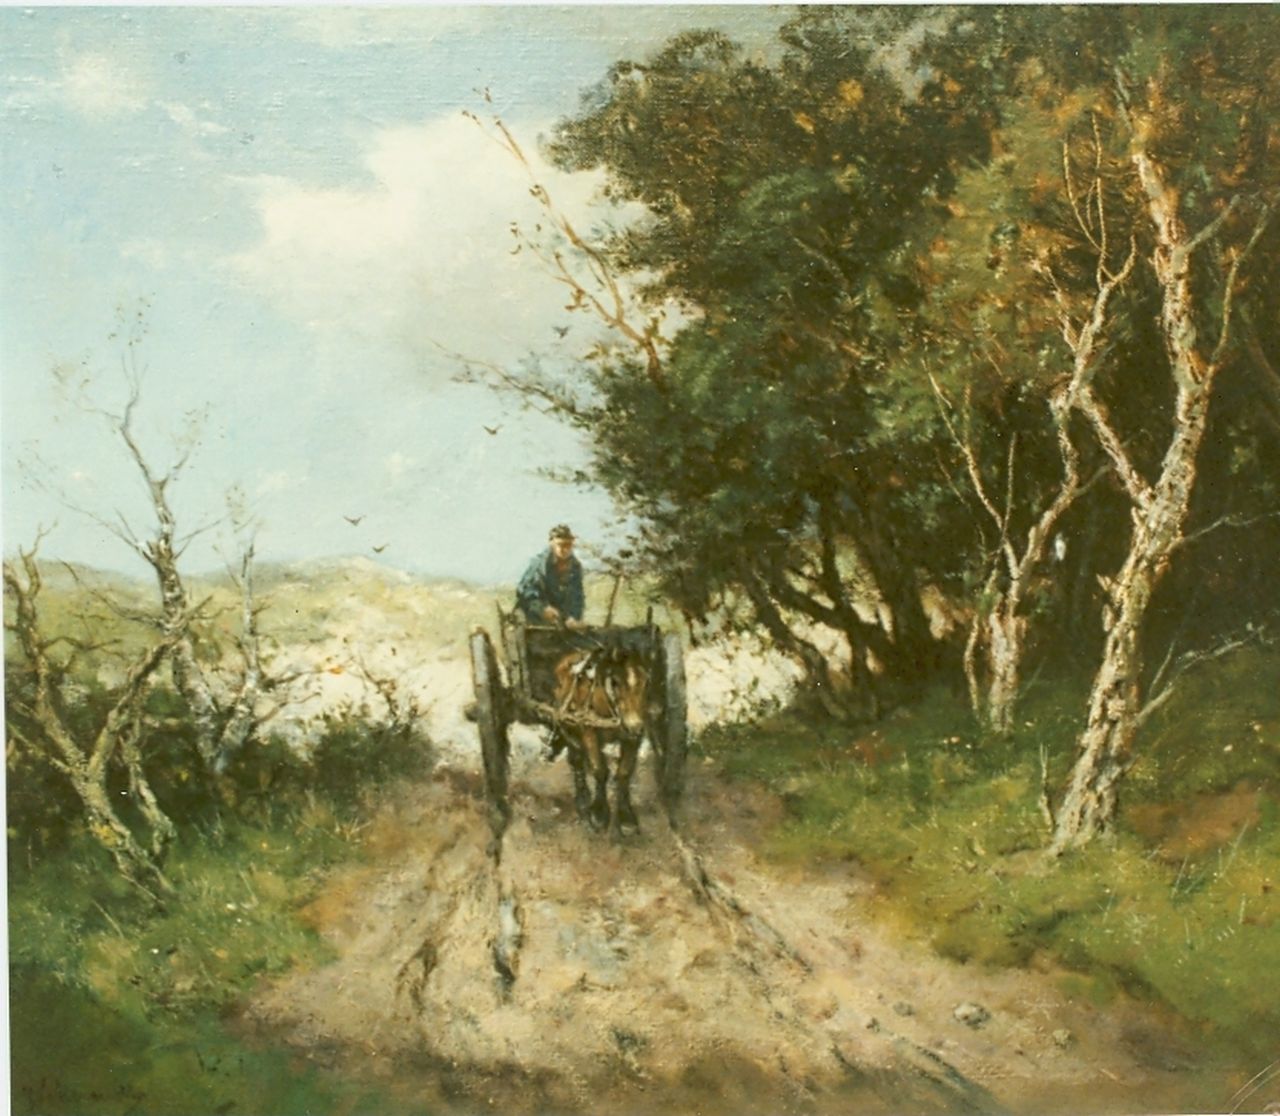 Scherrewitz J.F.C.  | Johan Frederik Cornelis Scherrewitz, Horse-drawn cart, oil on canvas 44.7 x 55.2 cm, signed l.l.